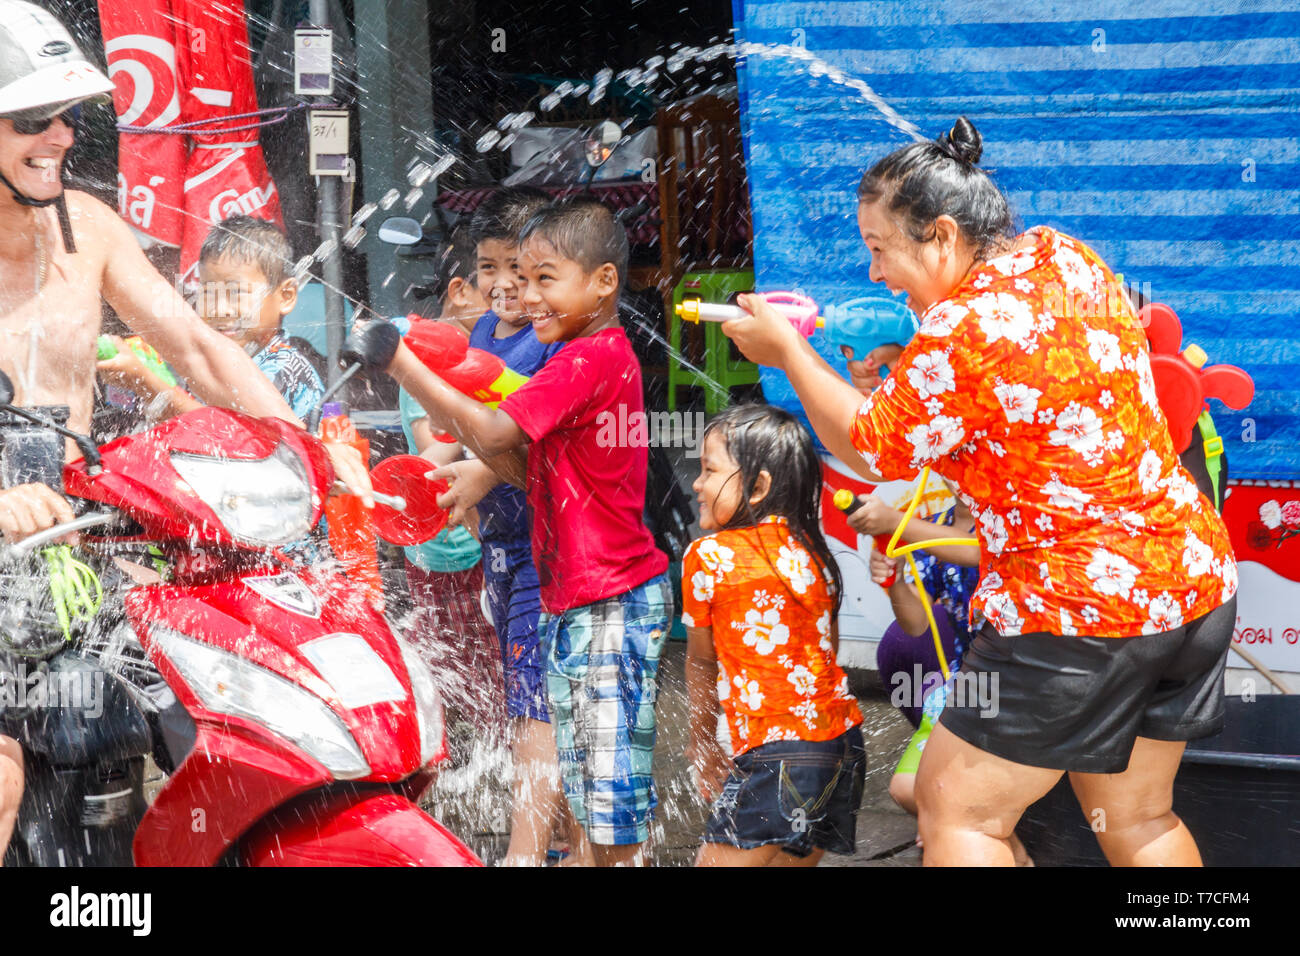 Phuket, Tailandia - 13 Aprile 2017: persone su una moto completamente fradicia da Songkran partecipanti. Questo è il modo in cui i thailandesi celebrano il loro nuovo anno. Foto Stock